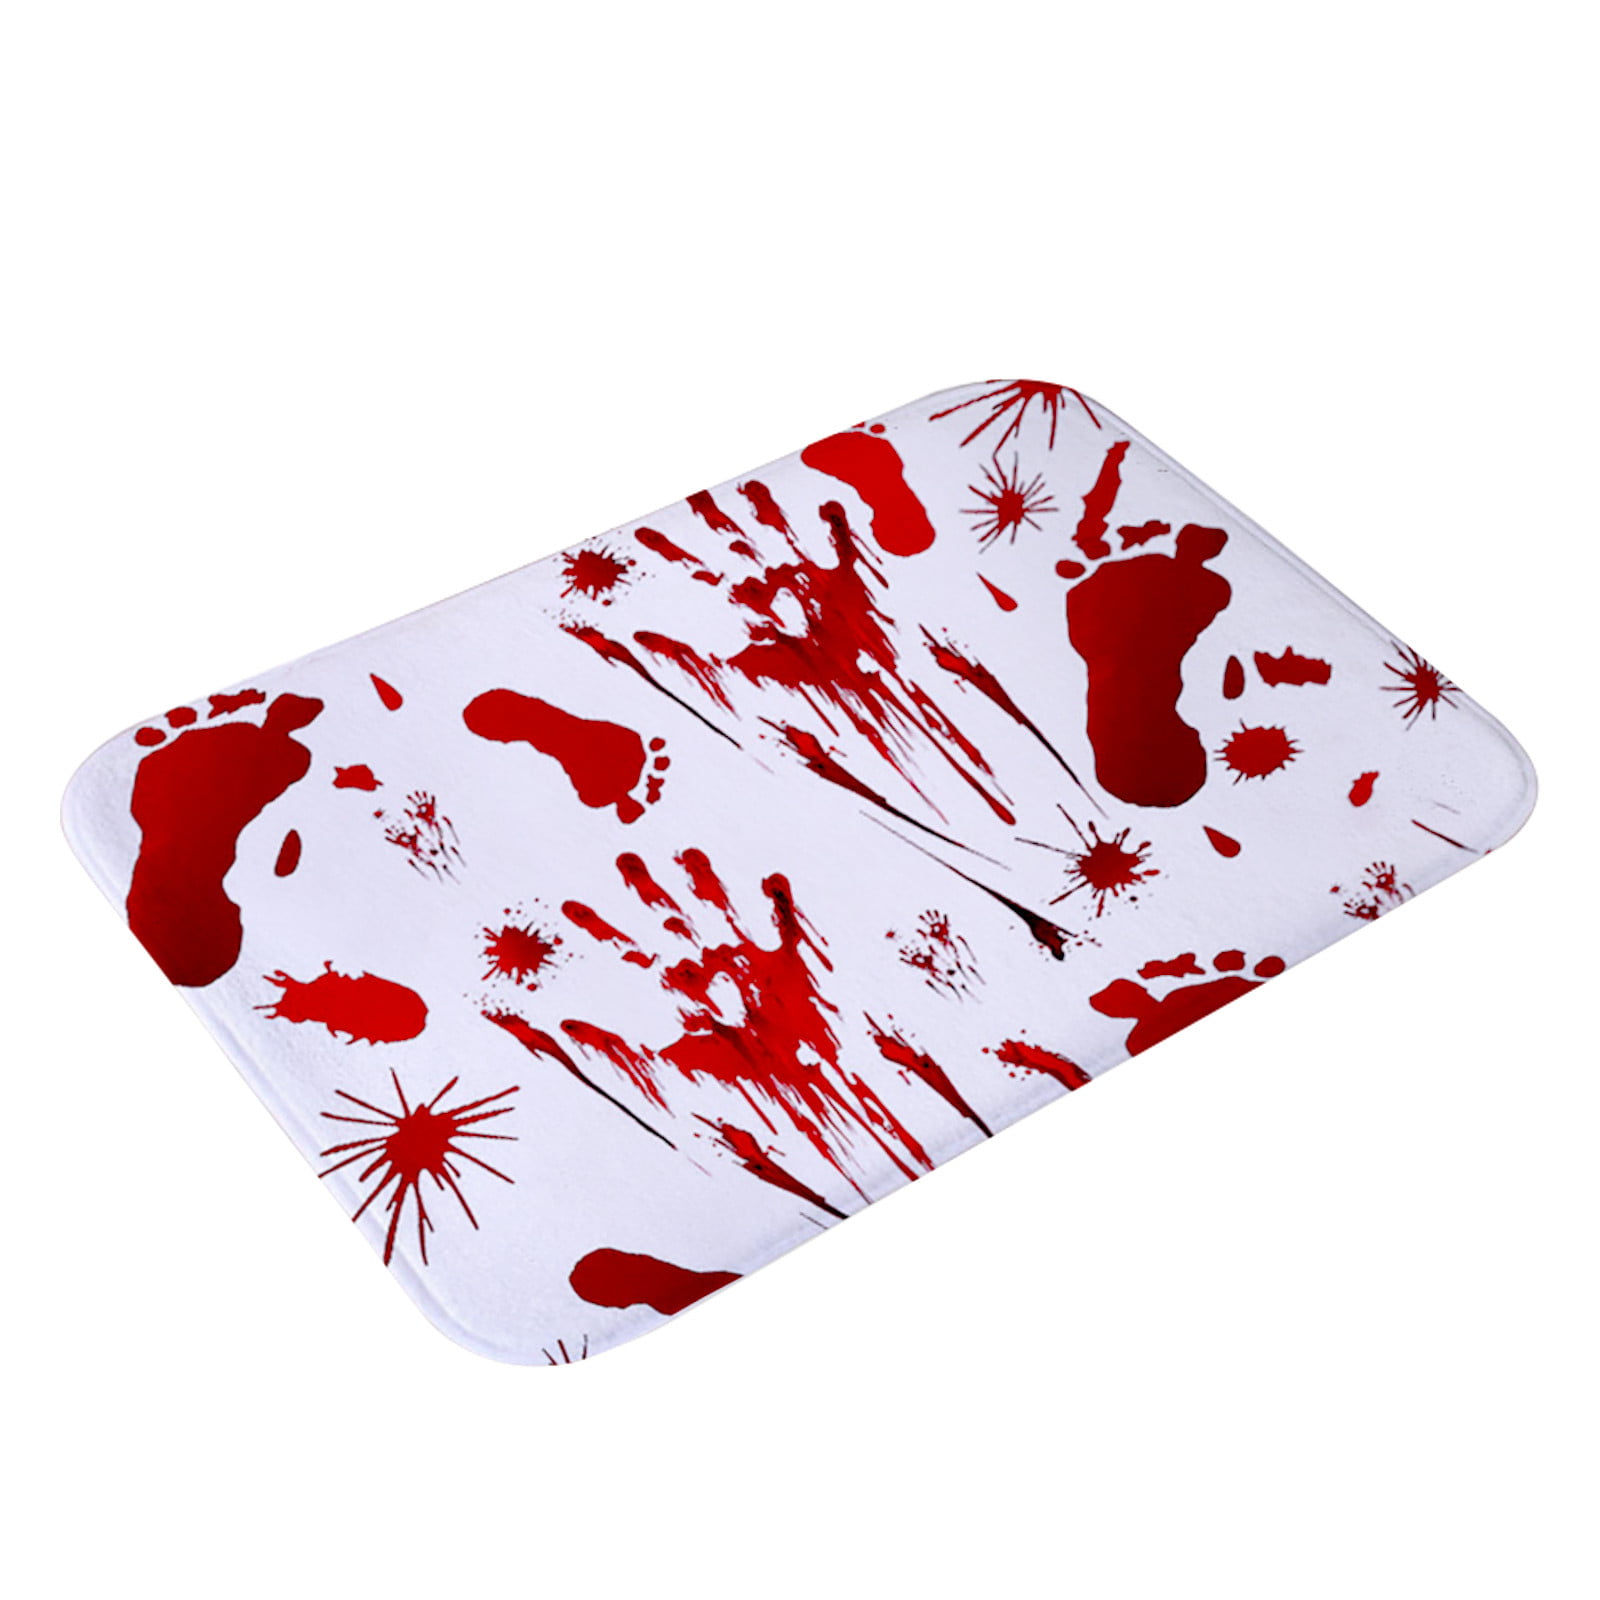 Blood Footprint Bath Mat Door Mat Scary Horror Style Halloween 40*60cm Mat 1 PC 